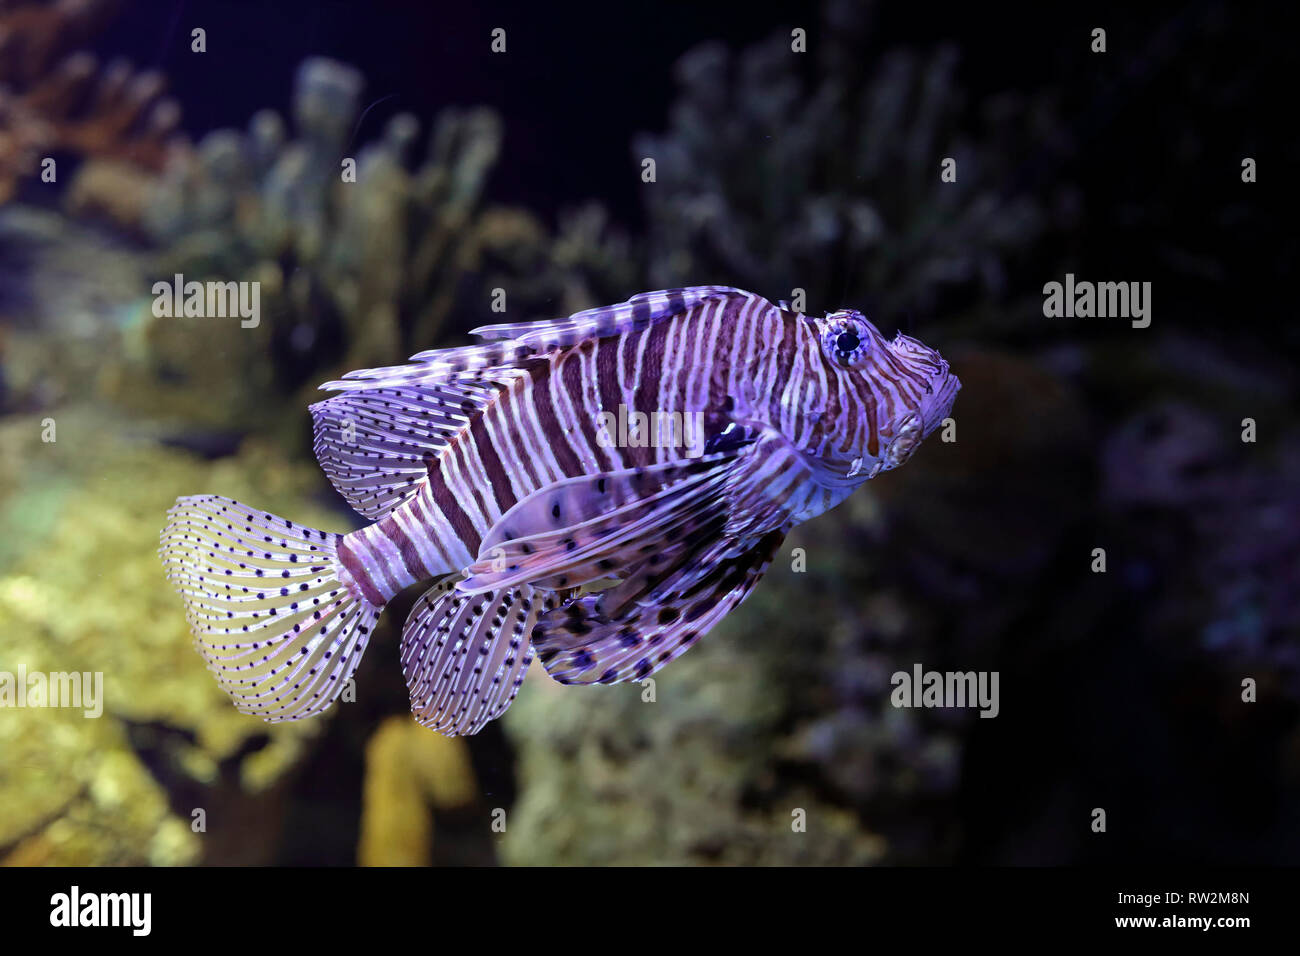 Pesce leone closeup. Foto di acquario. High ISO foto. Foto Stock